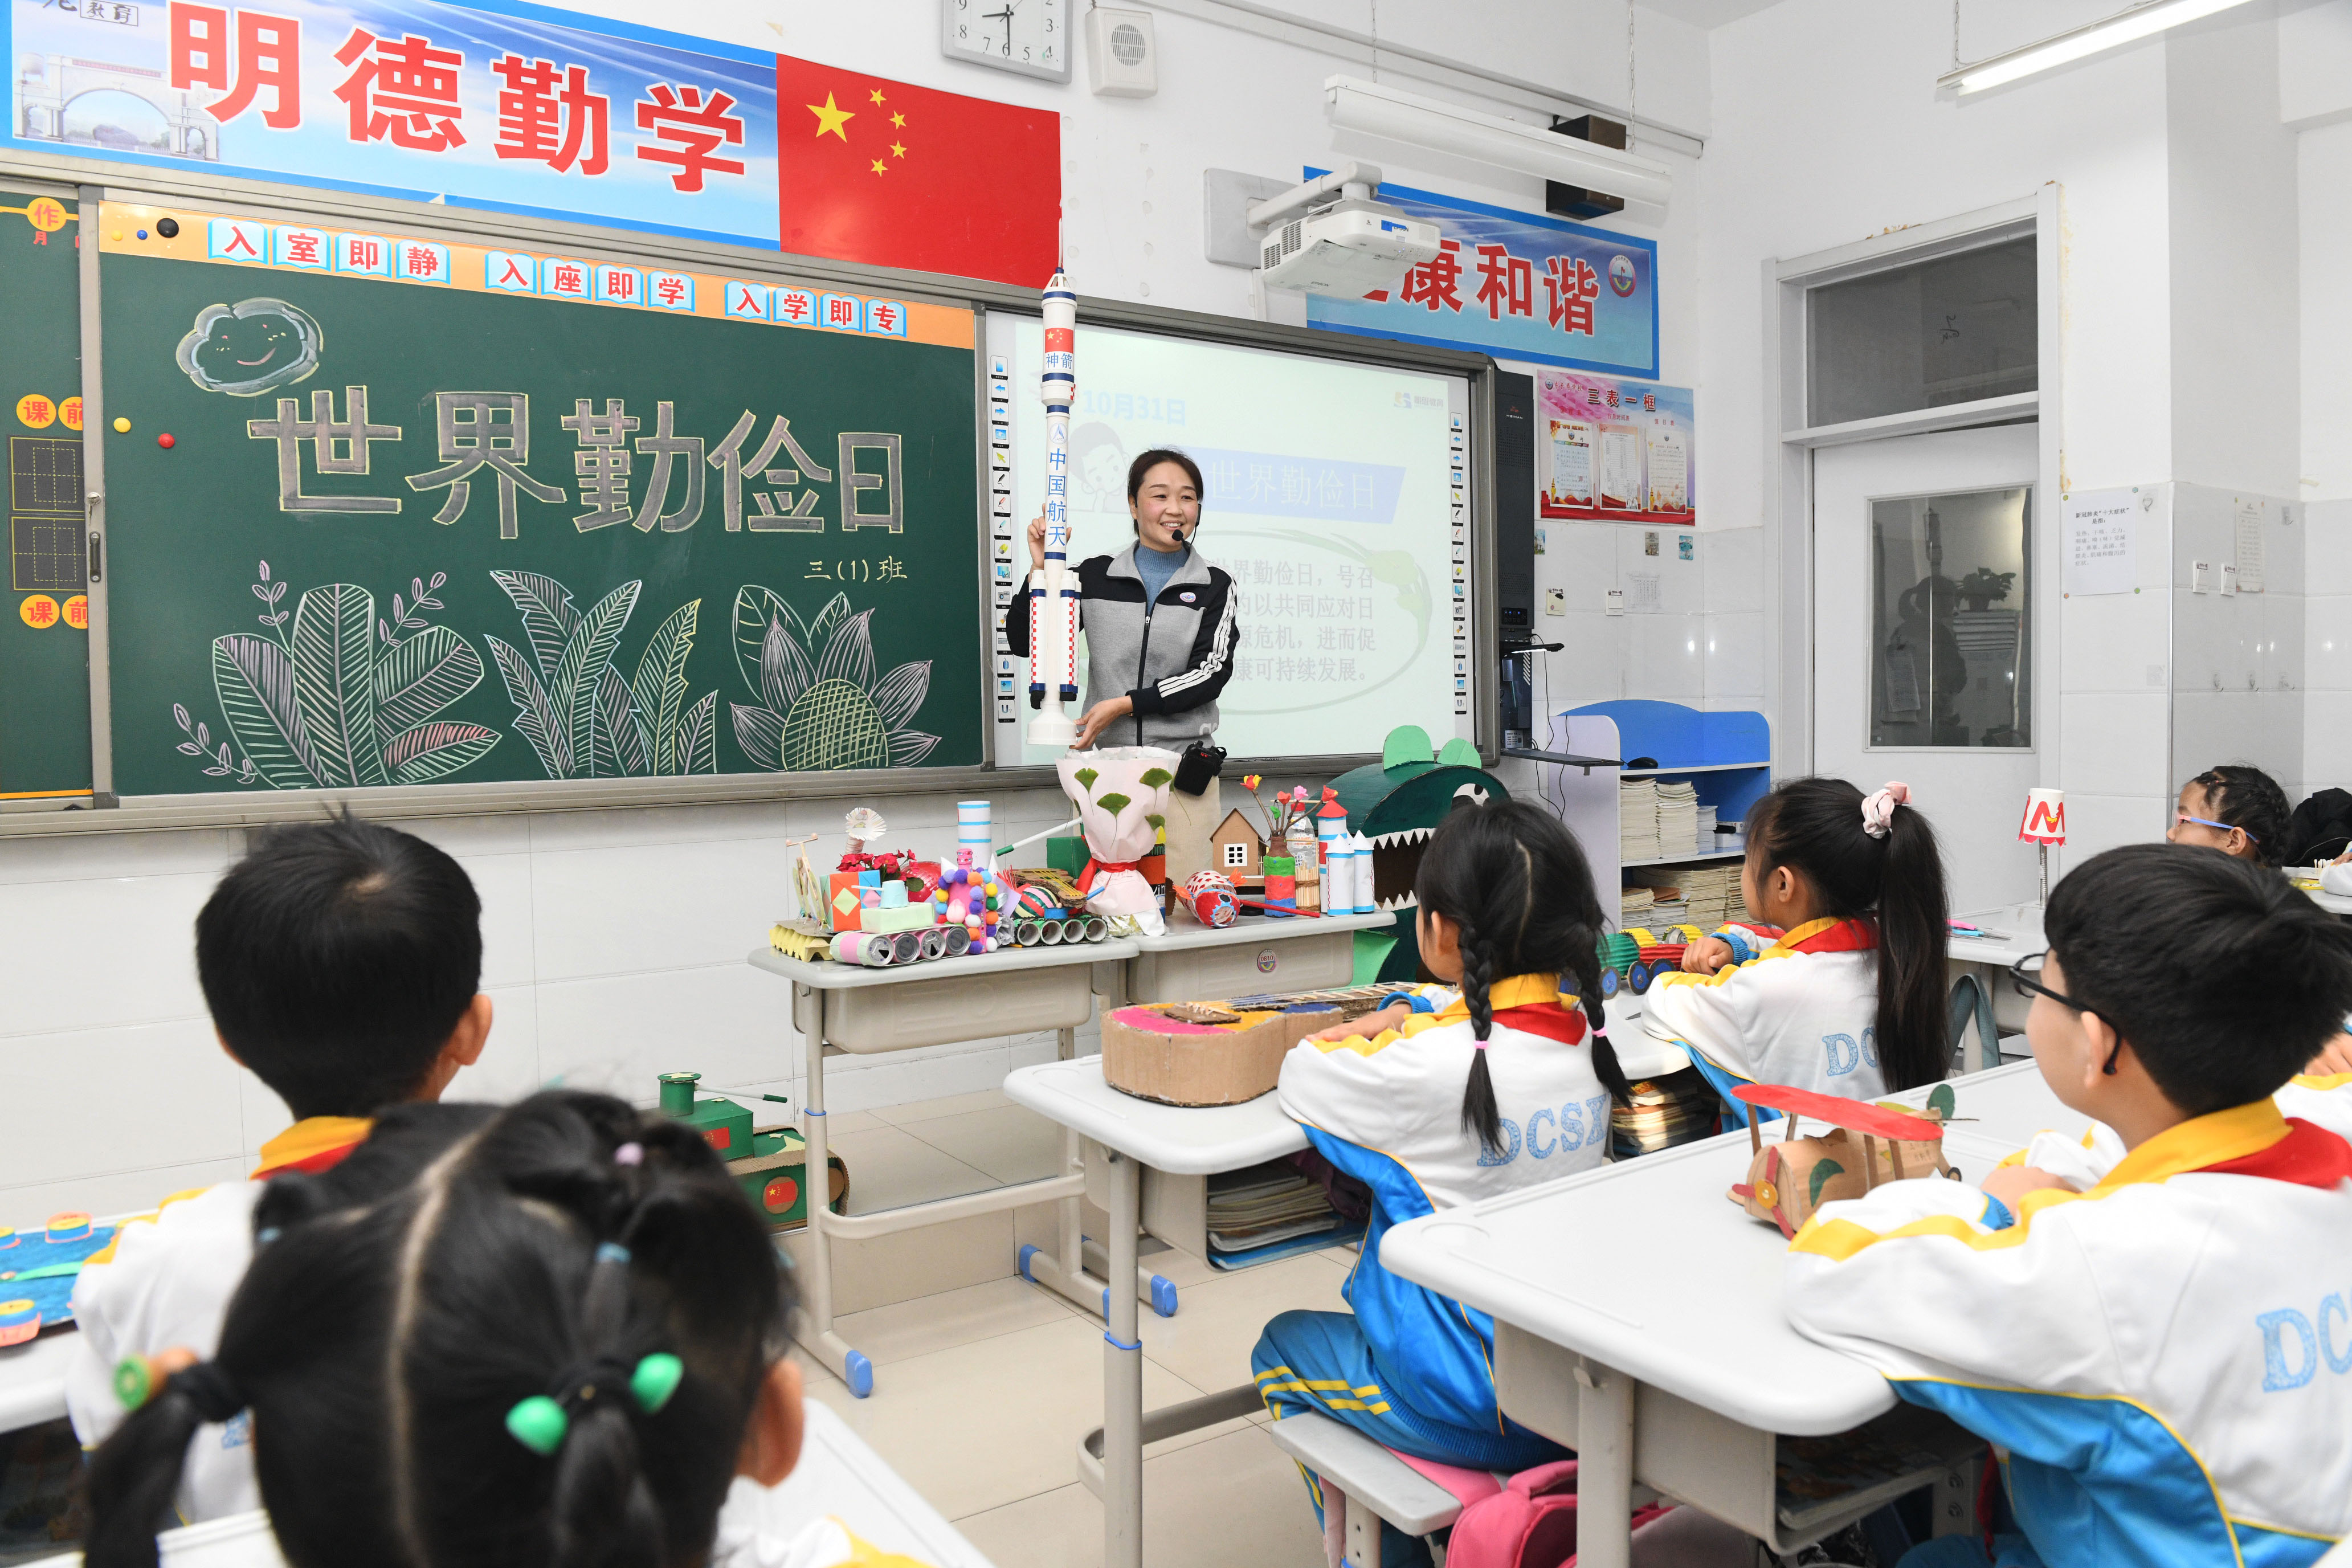 10月31日，河北省石家庄新乐市东长寿学校老师指导学生利用废旧物品制作手工作品。 贾敏杰摄